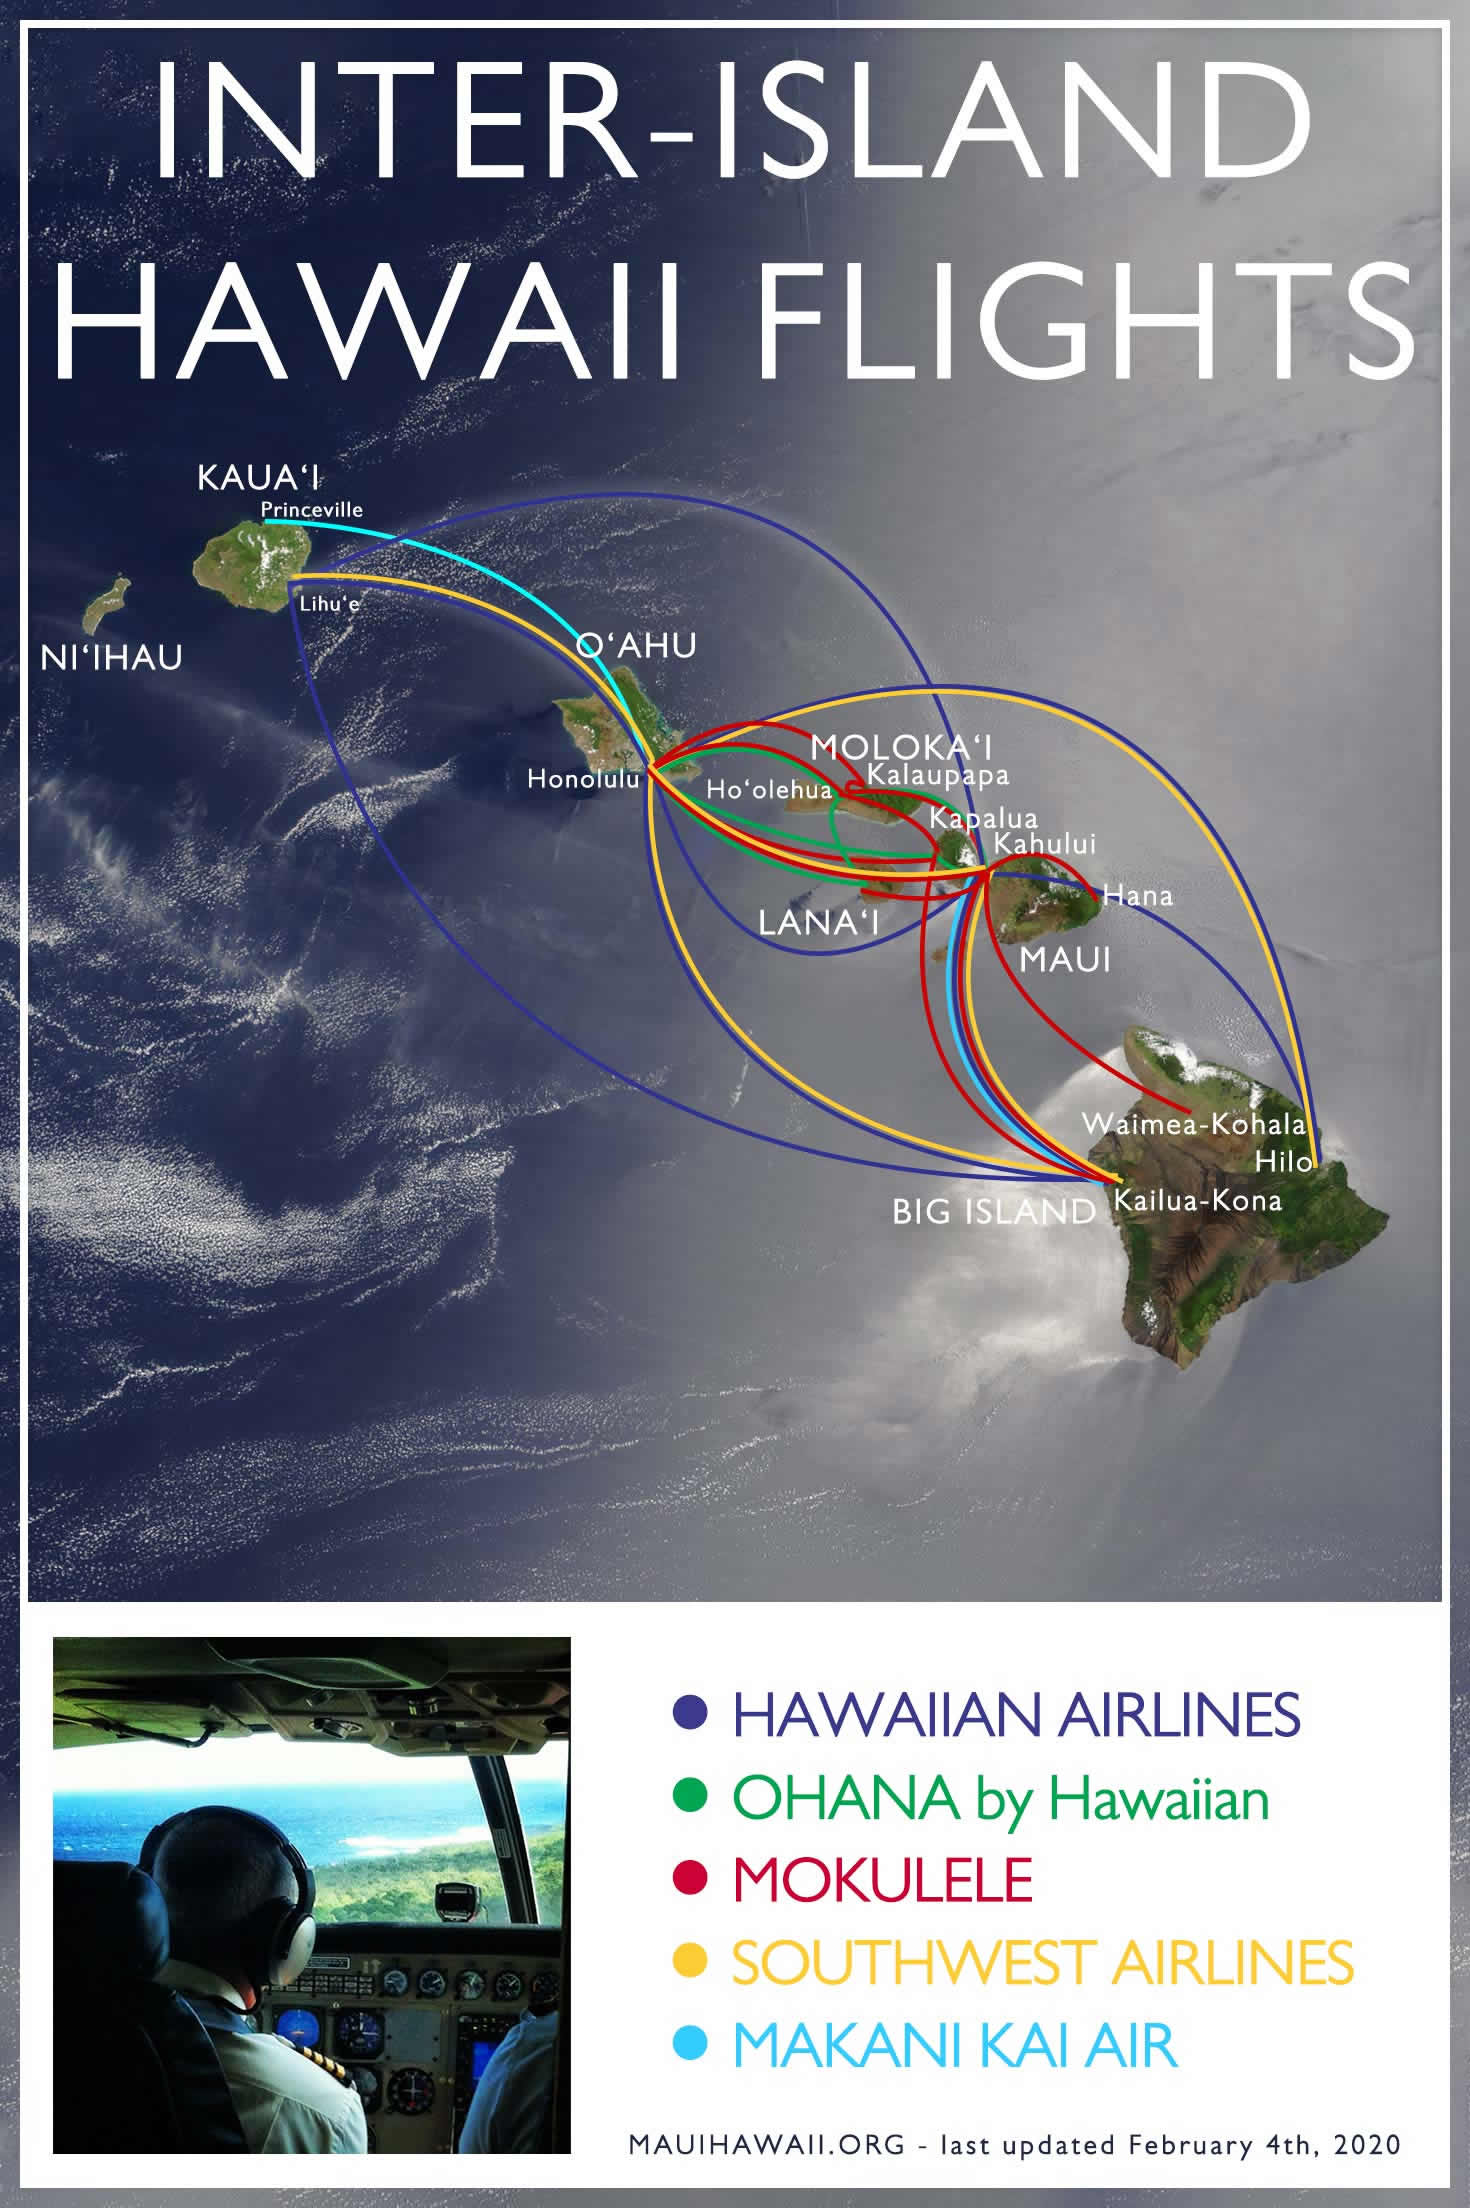 Inter-island Hawaii flights